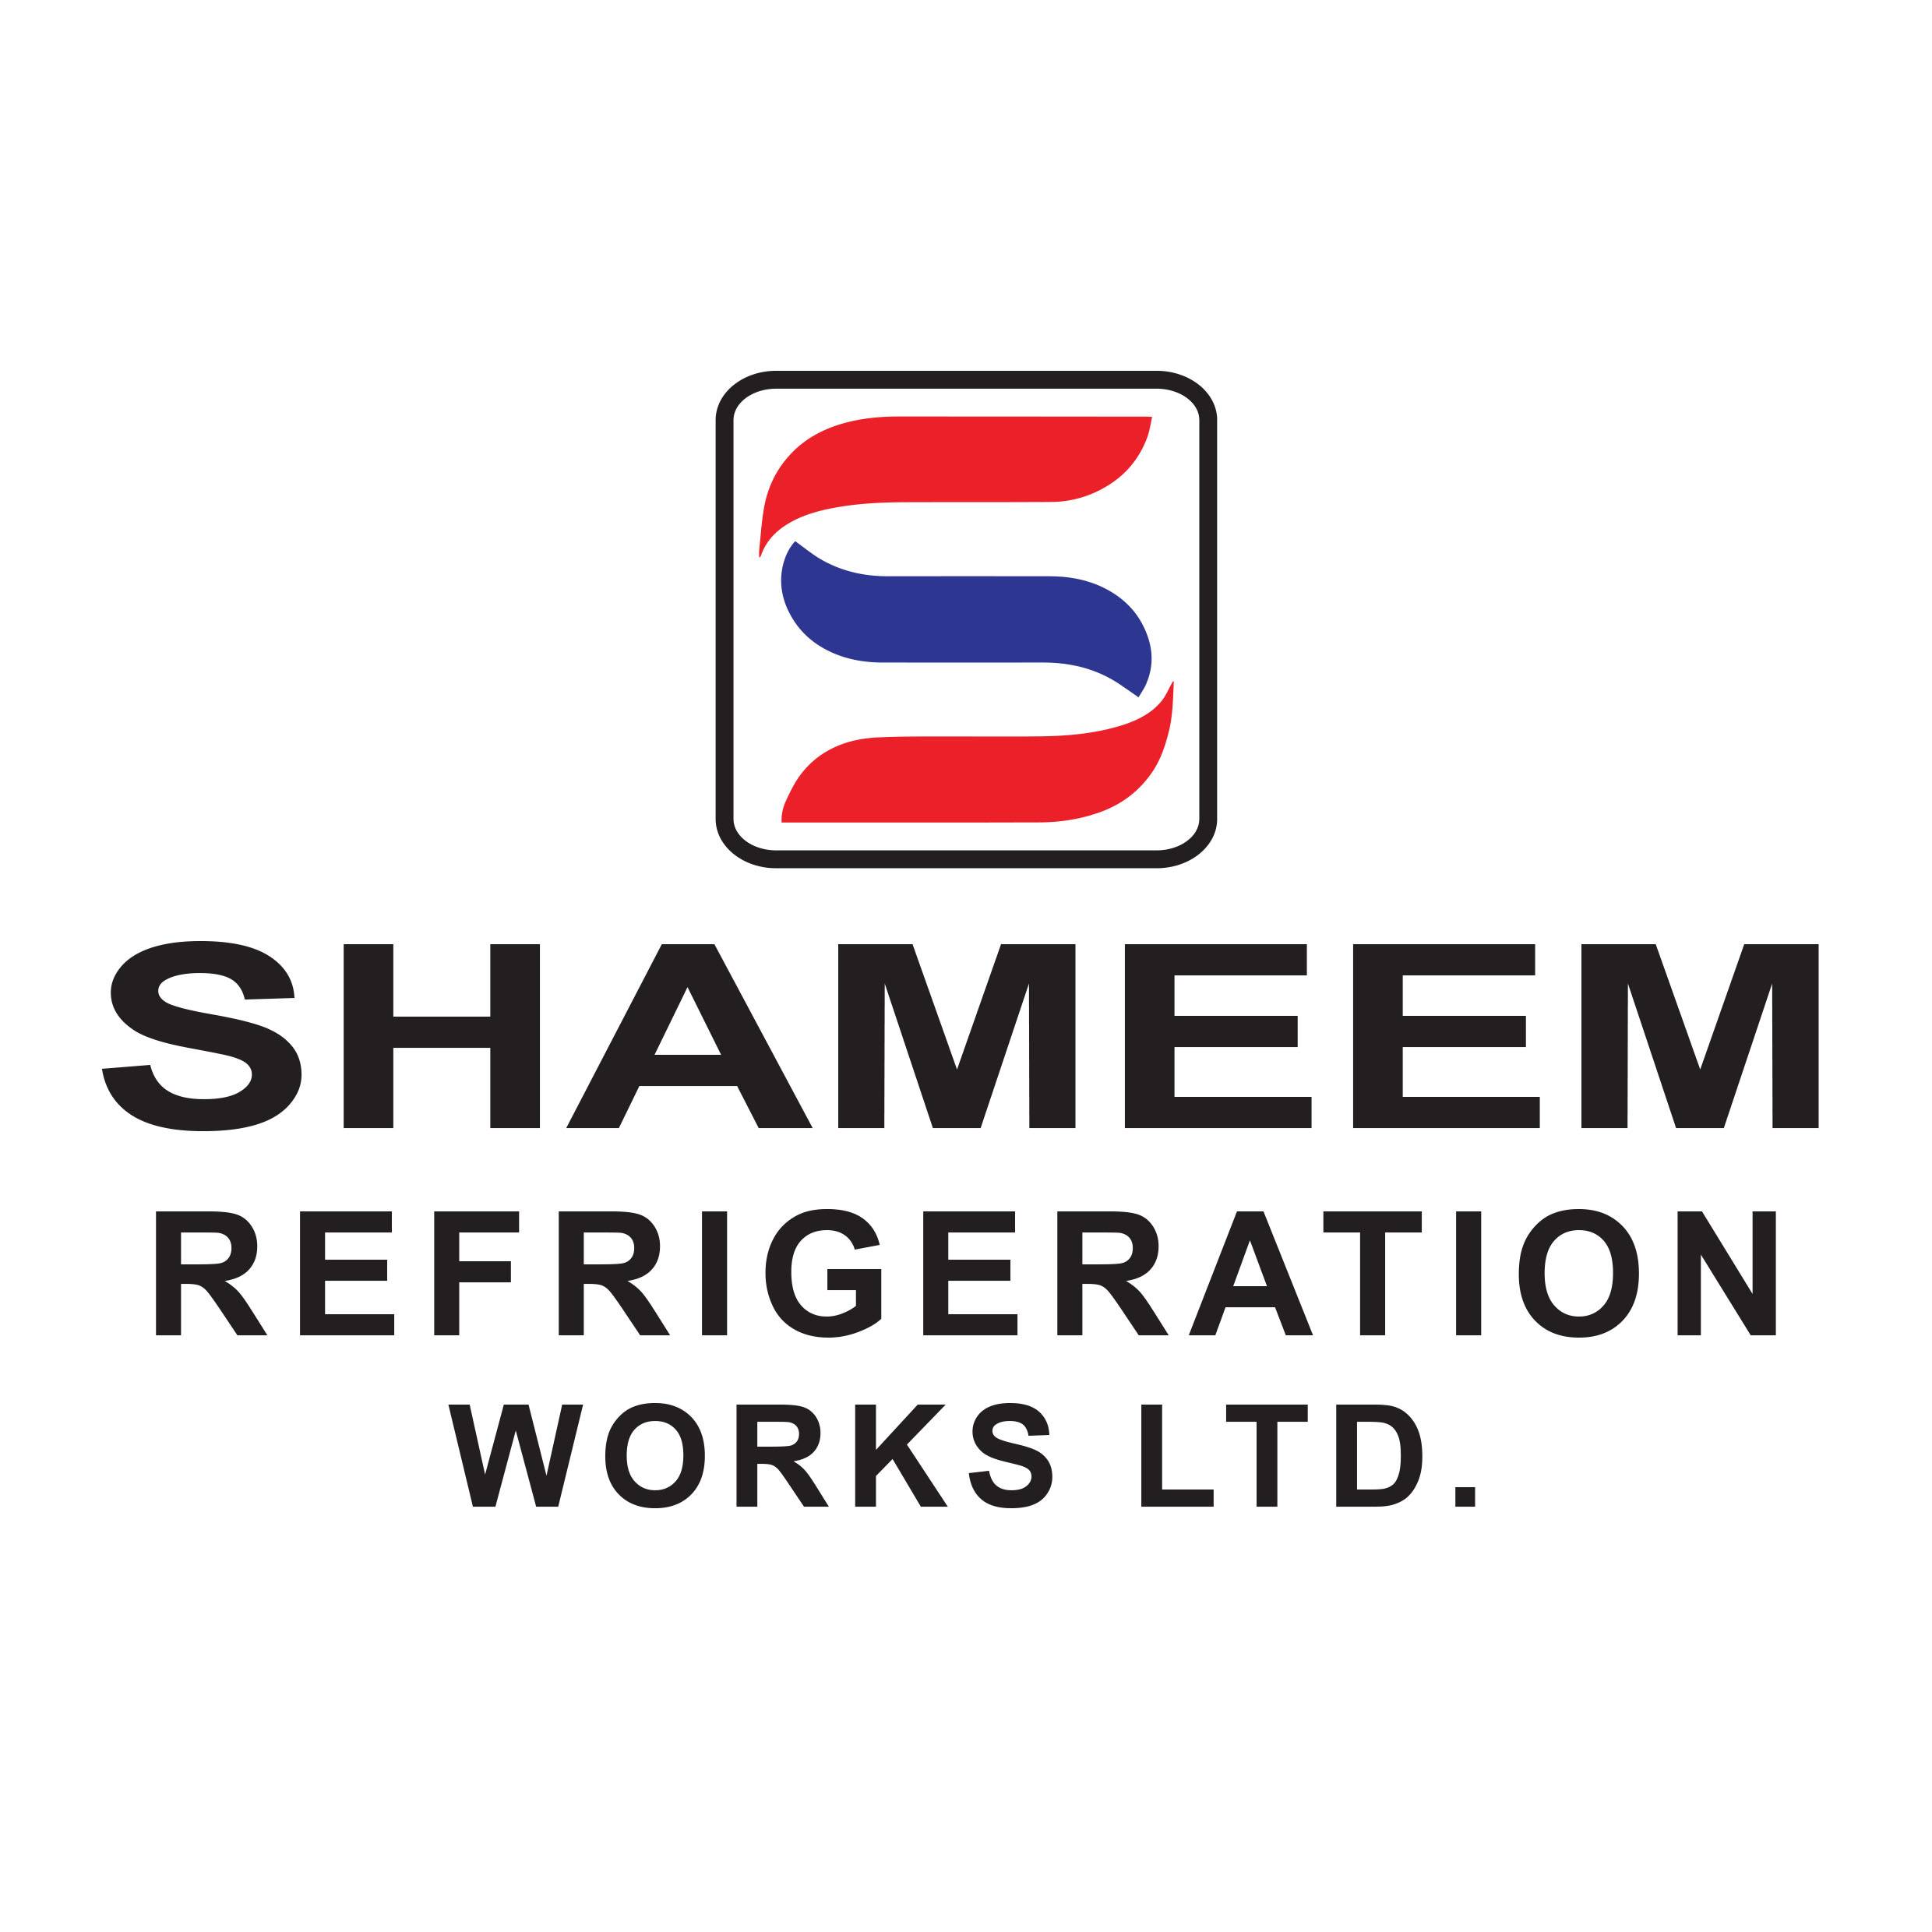 Shameem Refrigeration works Ltd.